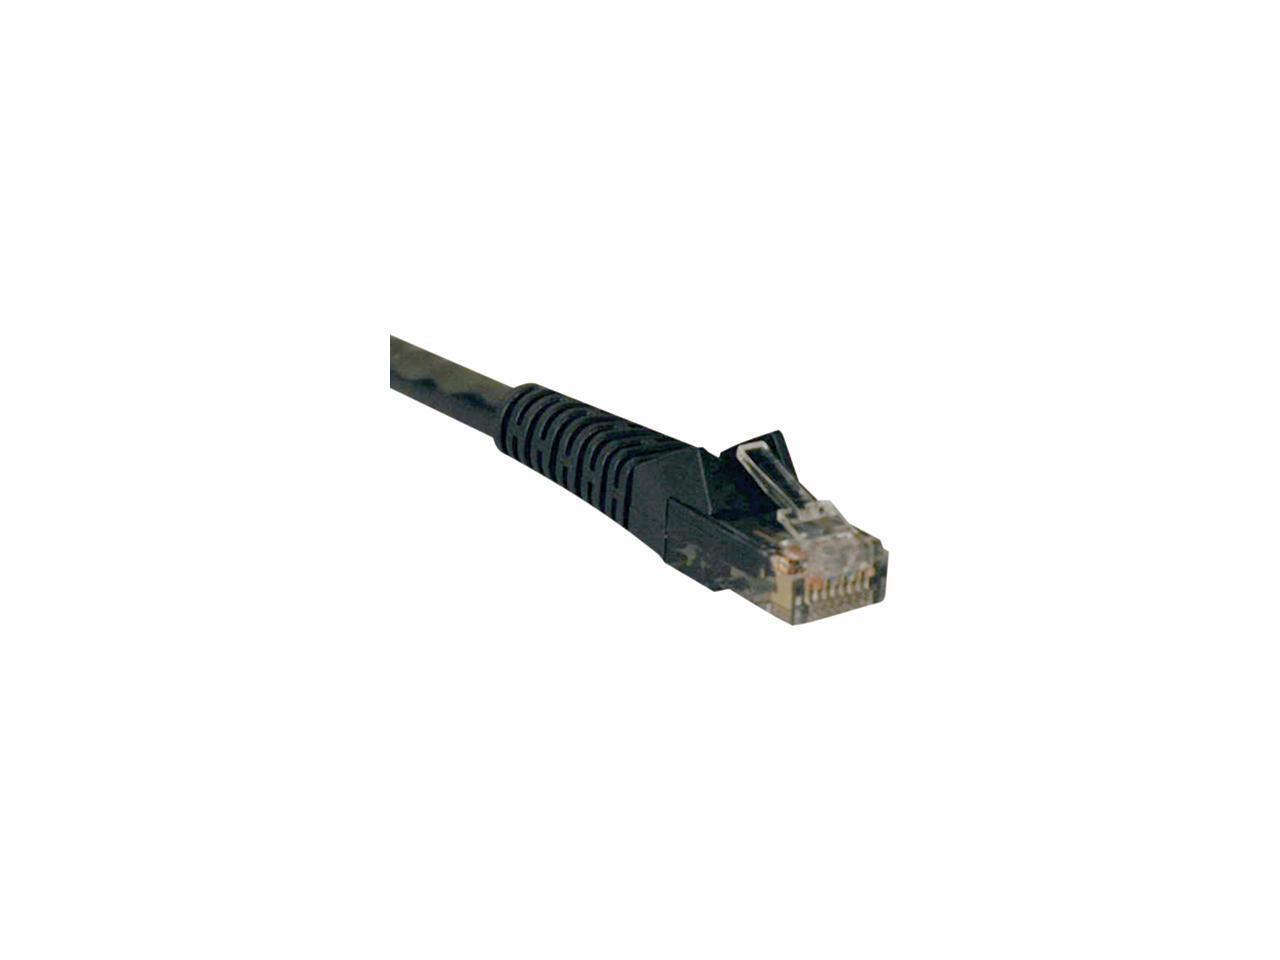 Tripp Lite Cat6 Gigabit Snagless Molded Patch Cable (RJ45 M/M) - Black, 50 ft.